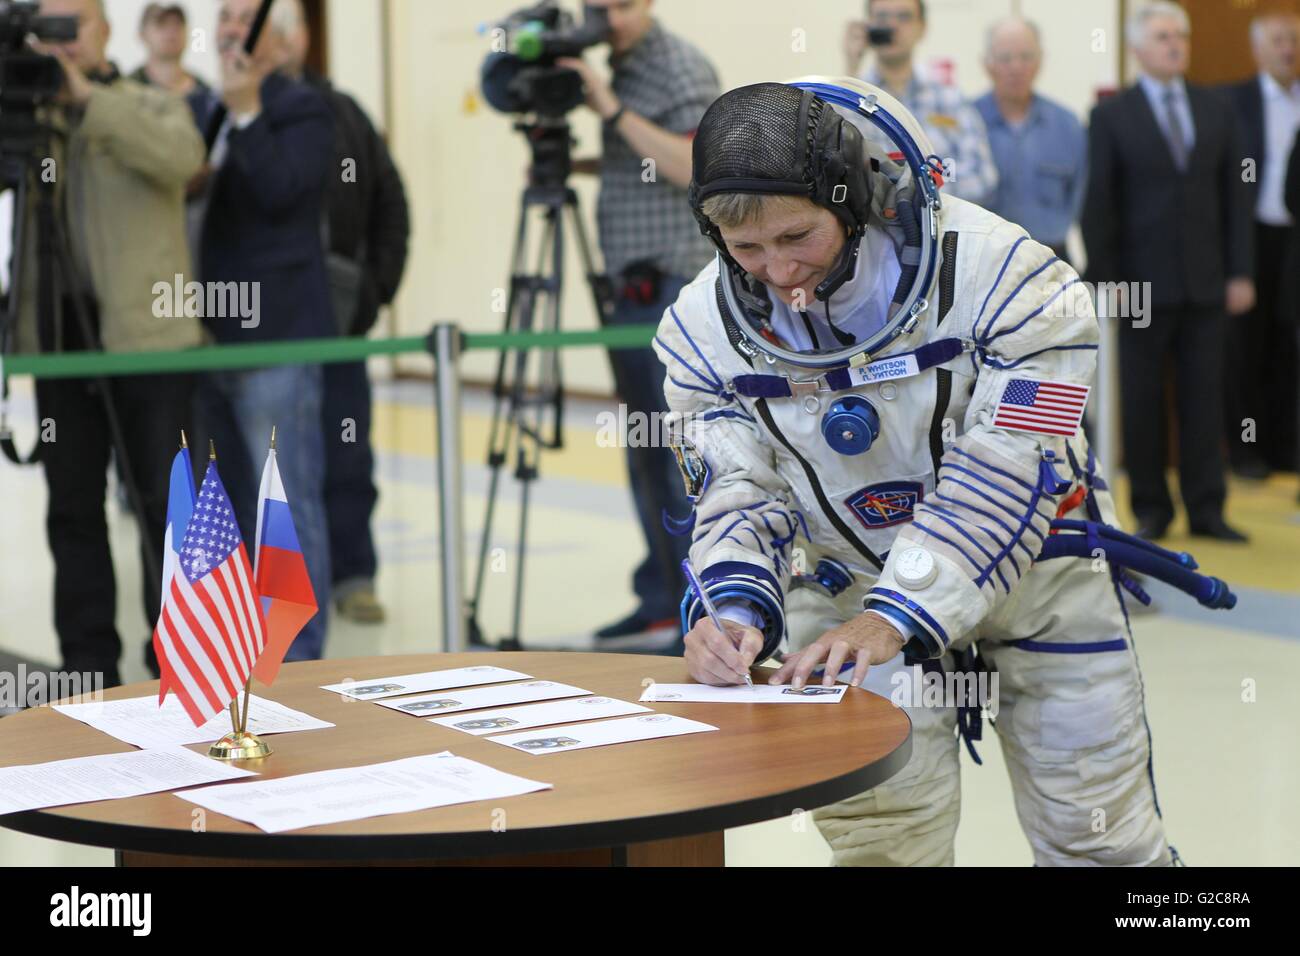 L'expédition 48 de la Station spatiale internationale membre de l'équipe de sauvegarde l'astronaute de la NASA Peggy Whitson panneaux dans les examens de qualification pour Soyouz au Centre d'entraînement des cosmonautes Gagarine le 26 mai 2016, à la Cité des étoiles, en Russie. Banque D'Images